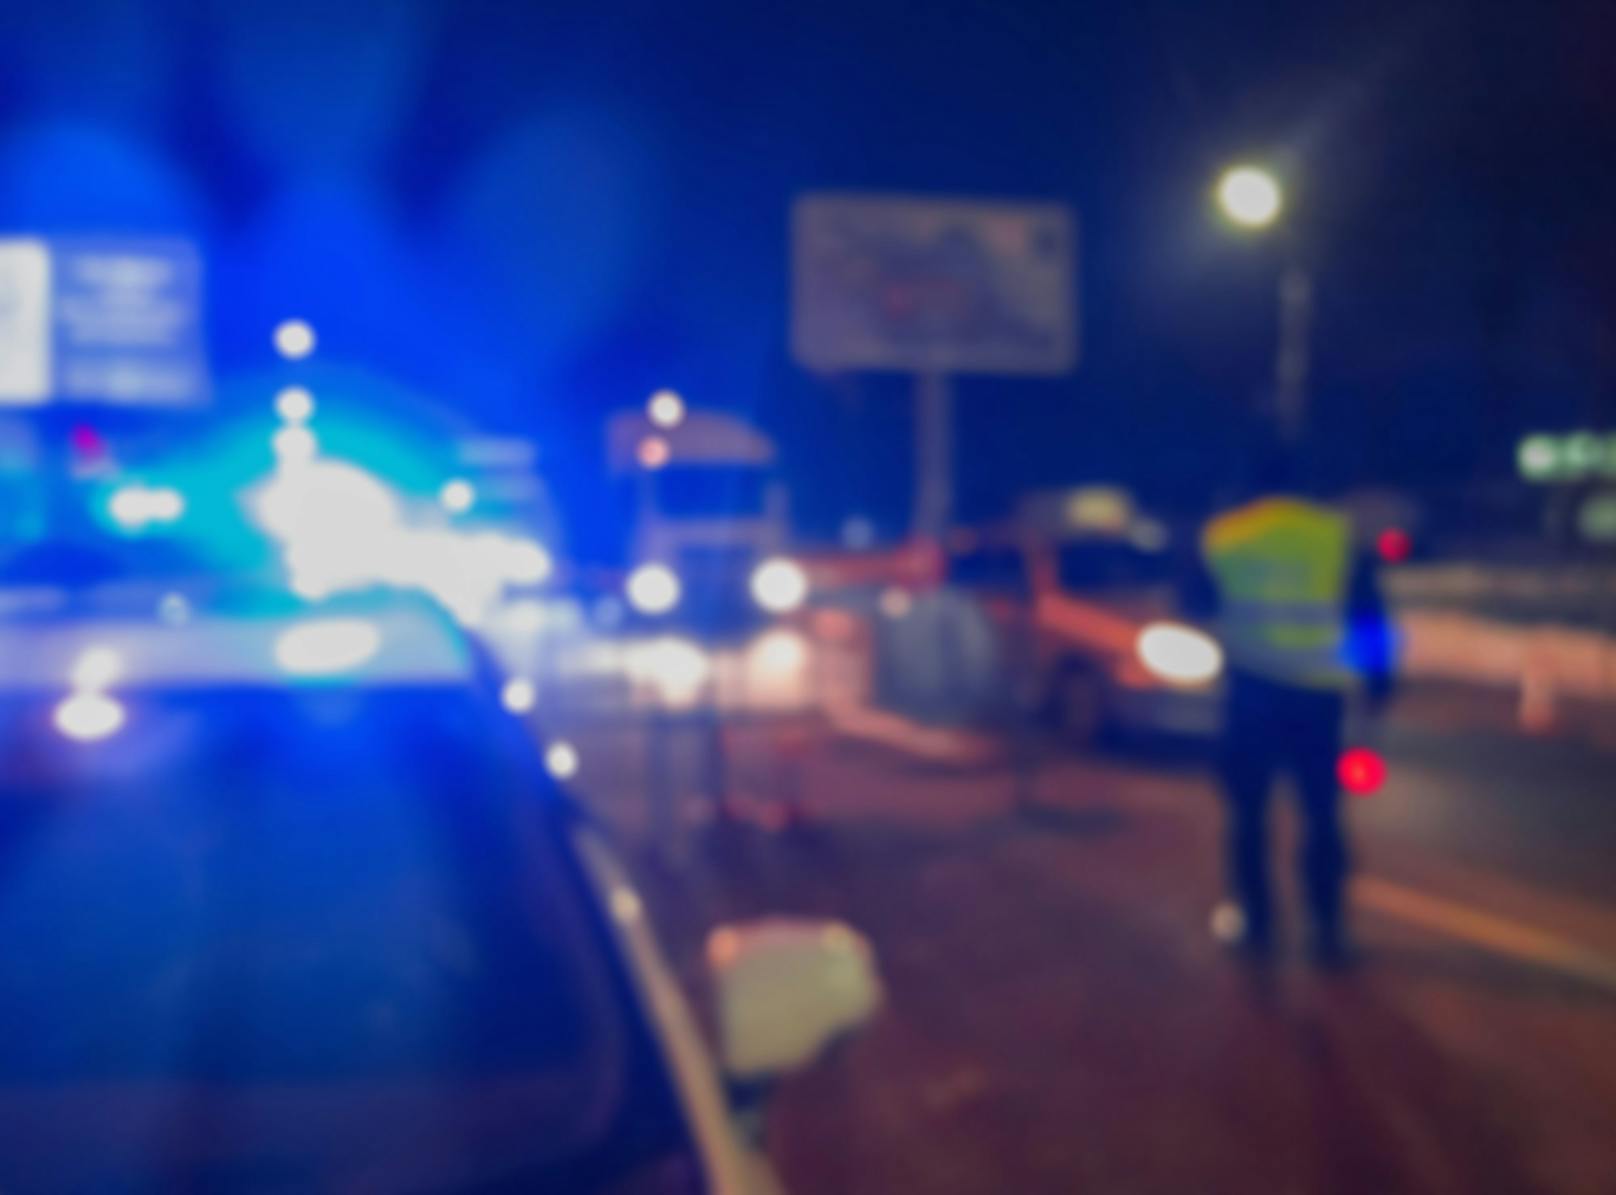 Horror-Unfall in Kärnten! Zwei Frauen sind sofort tot